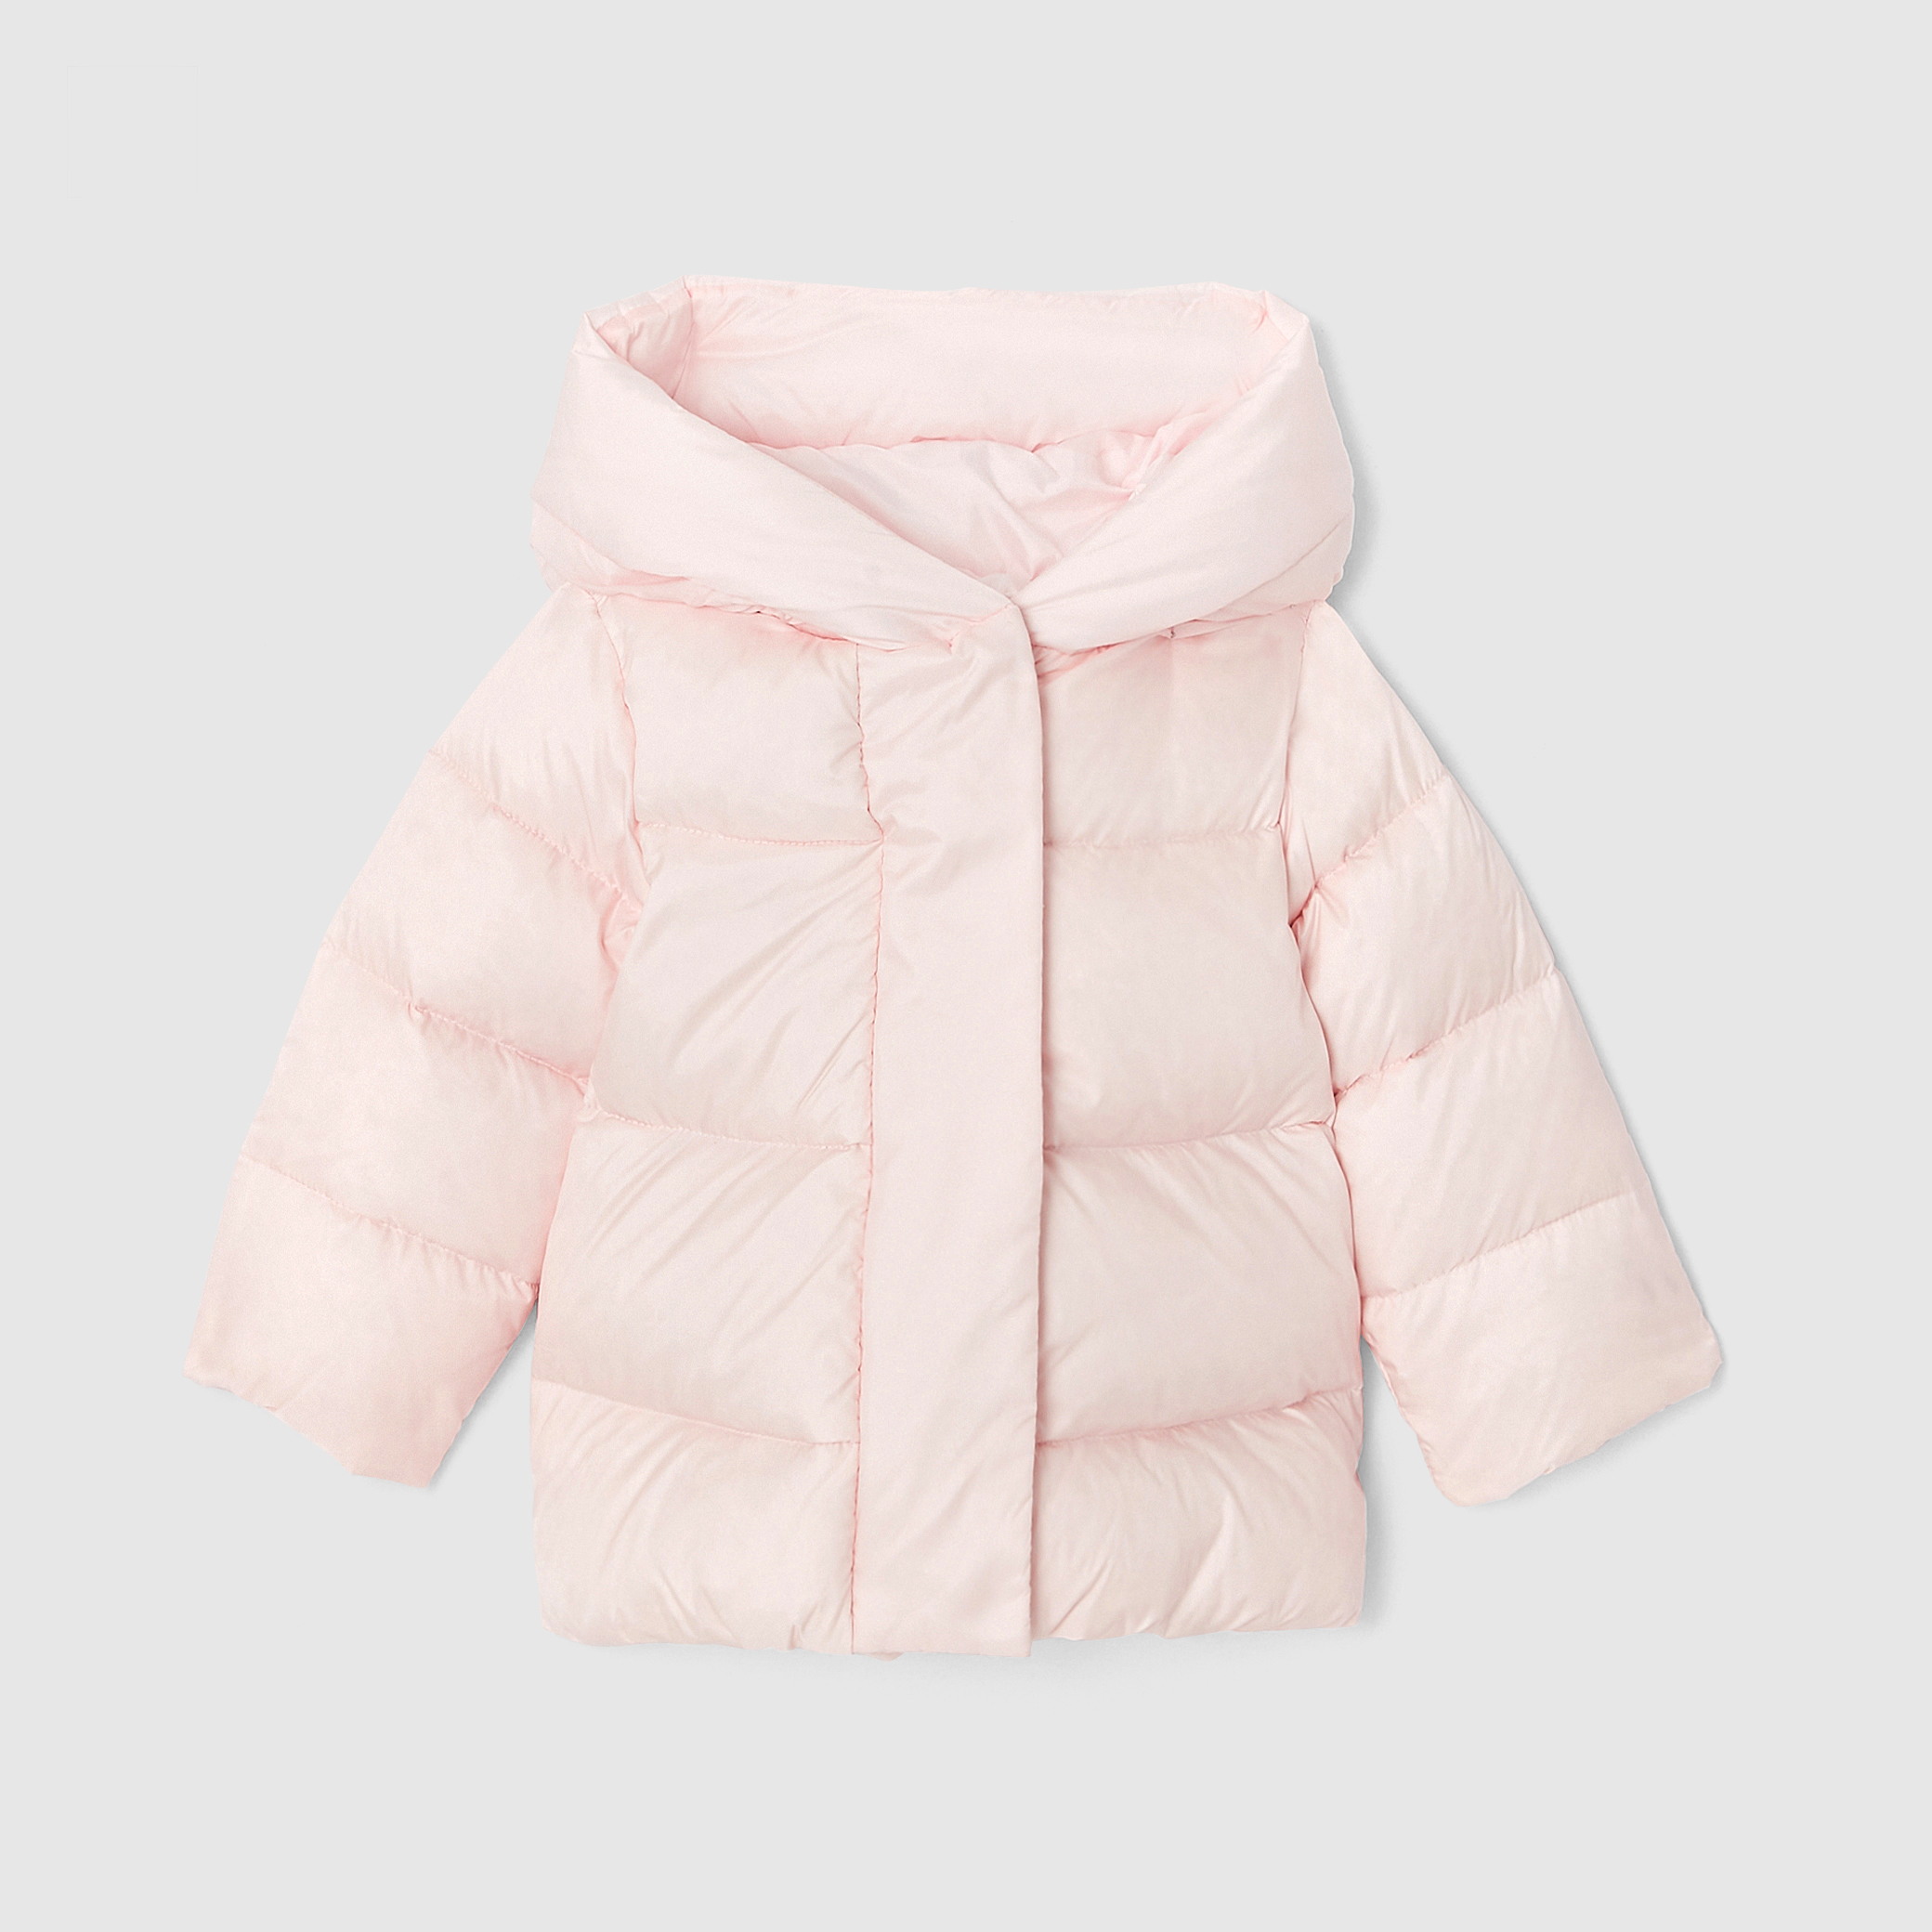 Toddler girl long puffer jacket